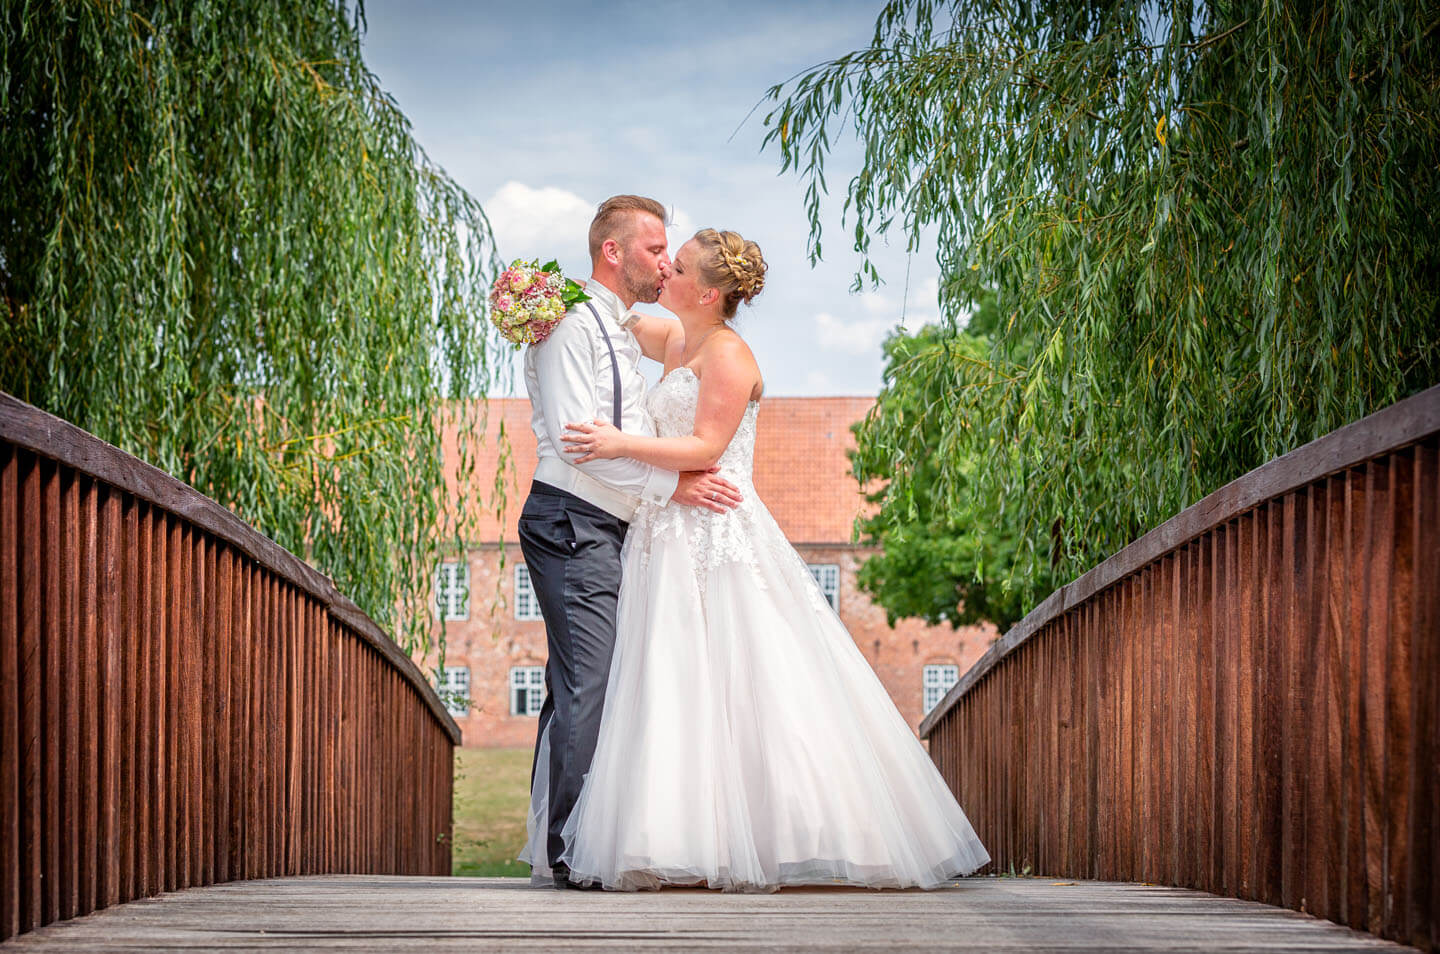 Brautpaar küsst sich während des Fotoshootings für die Hochzeitsbilder